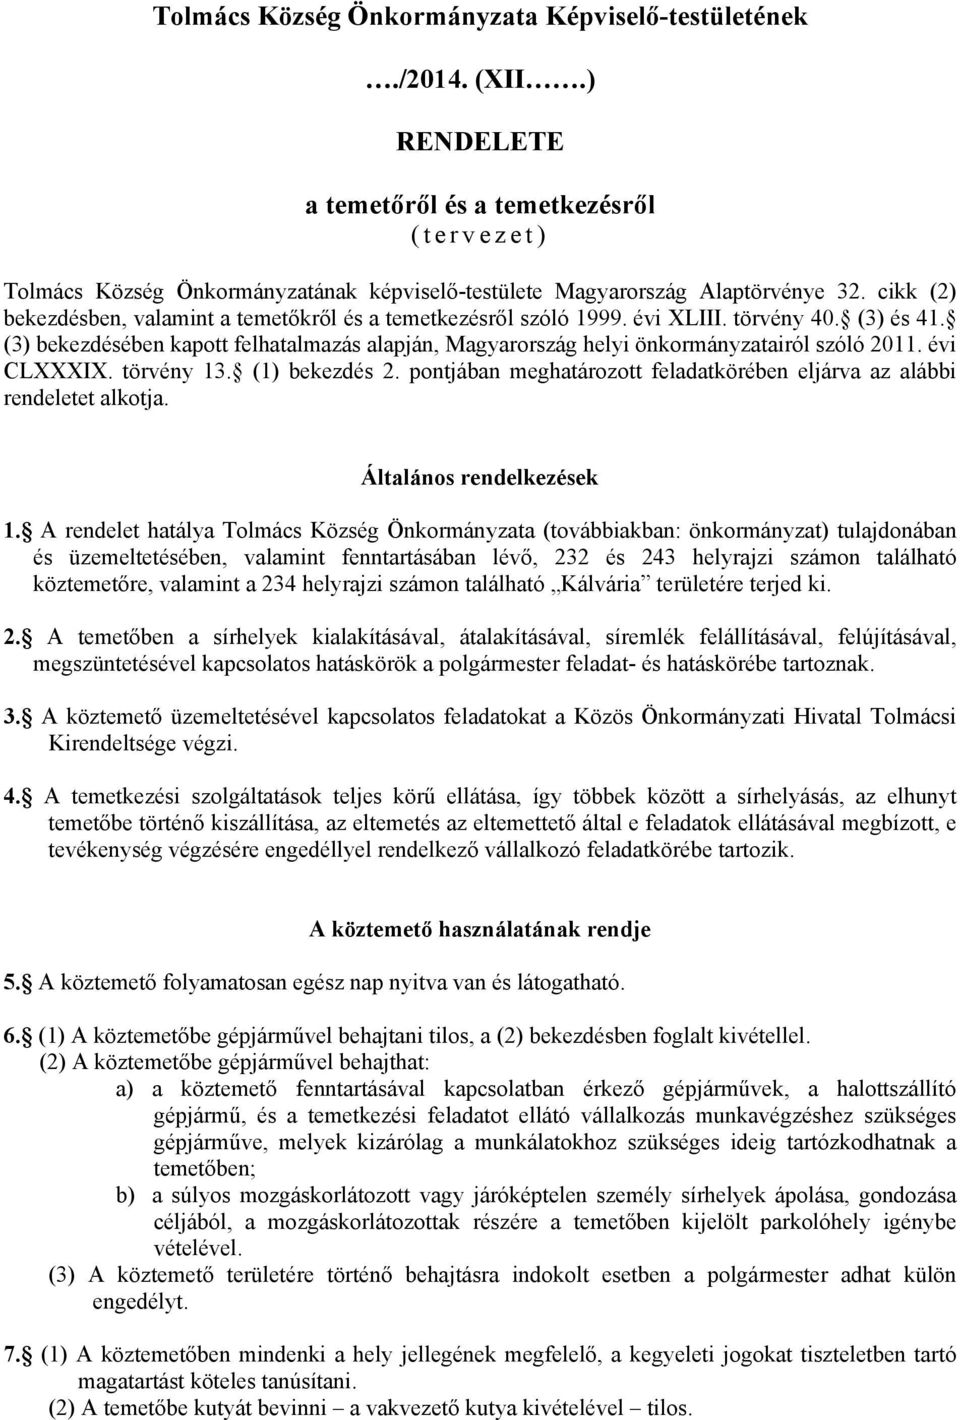 (3) bekezdésében kapott felhatalmazás alapján, Magyarország helyi önkormányzatairól szóló 2011. évi CLXXXIX. törvény 13. (1) bekezdés 2.